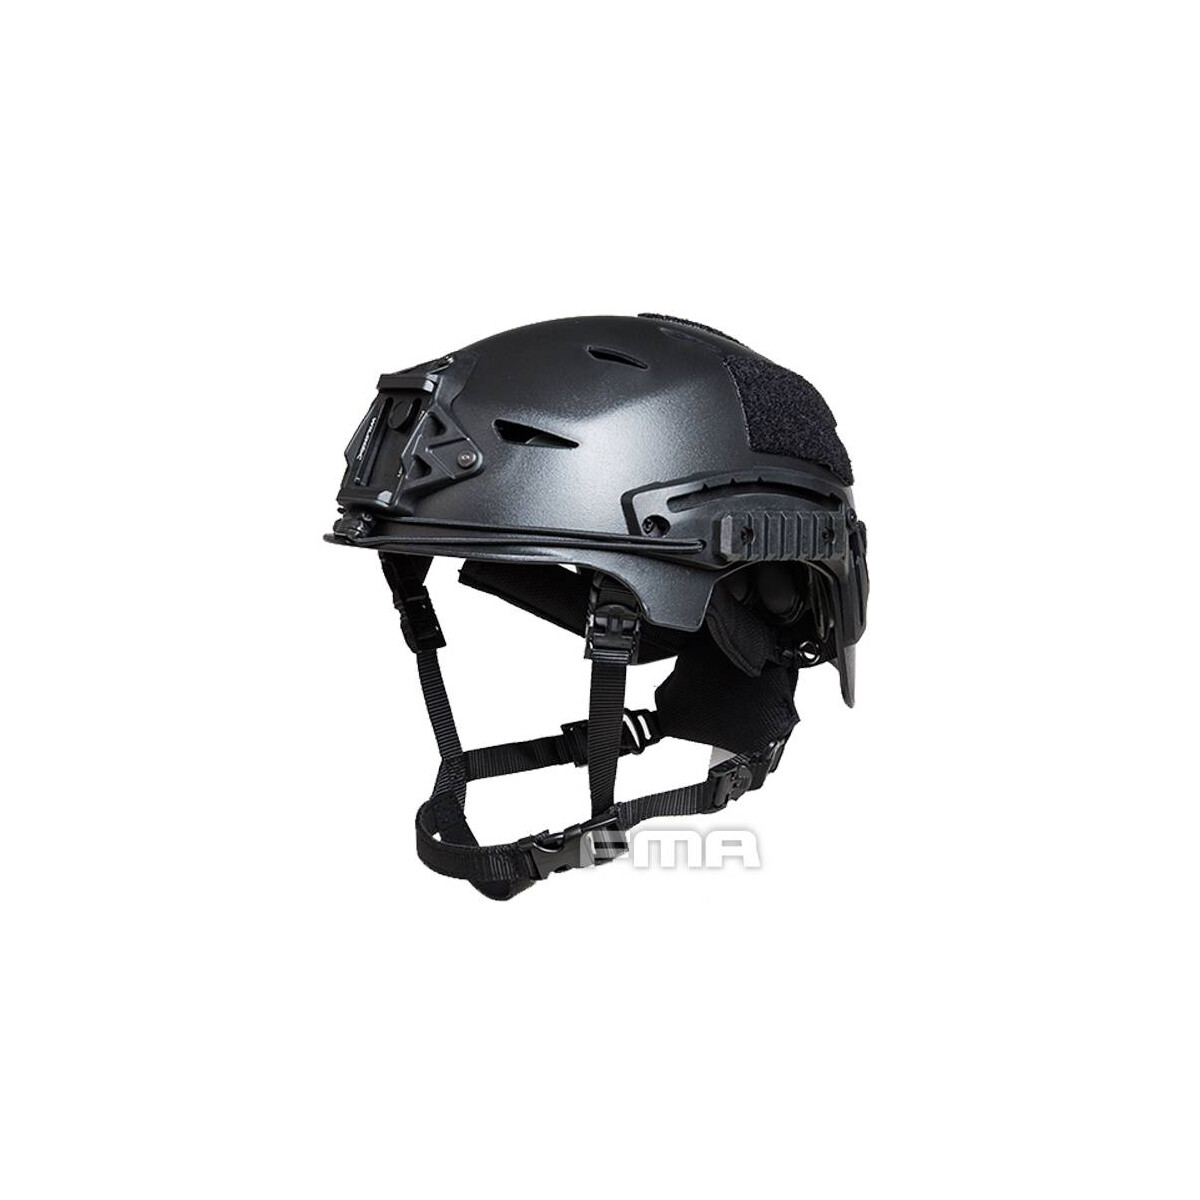 EXF Bump Helmet Black, M/L